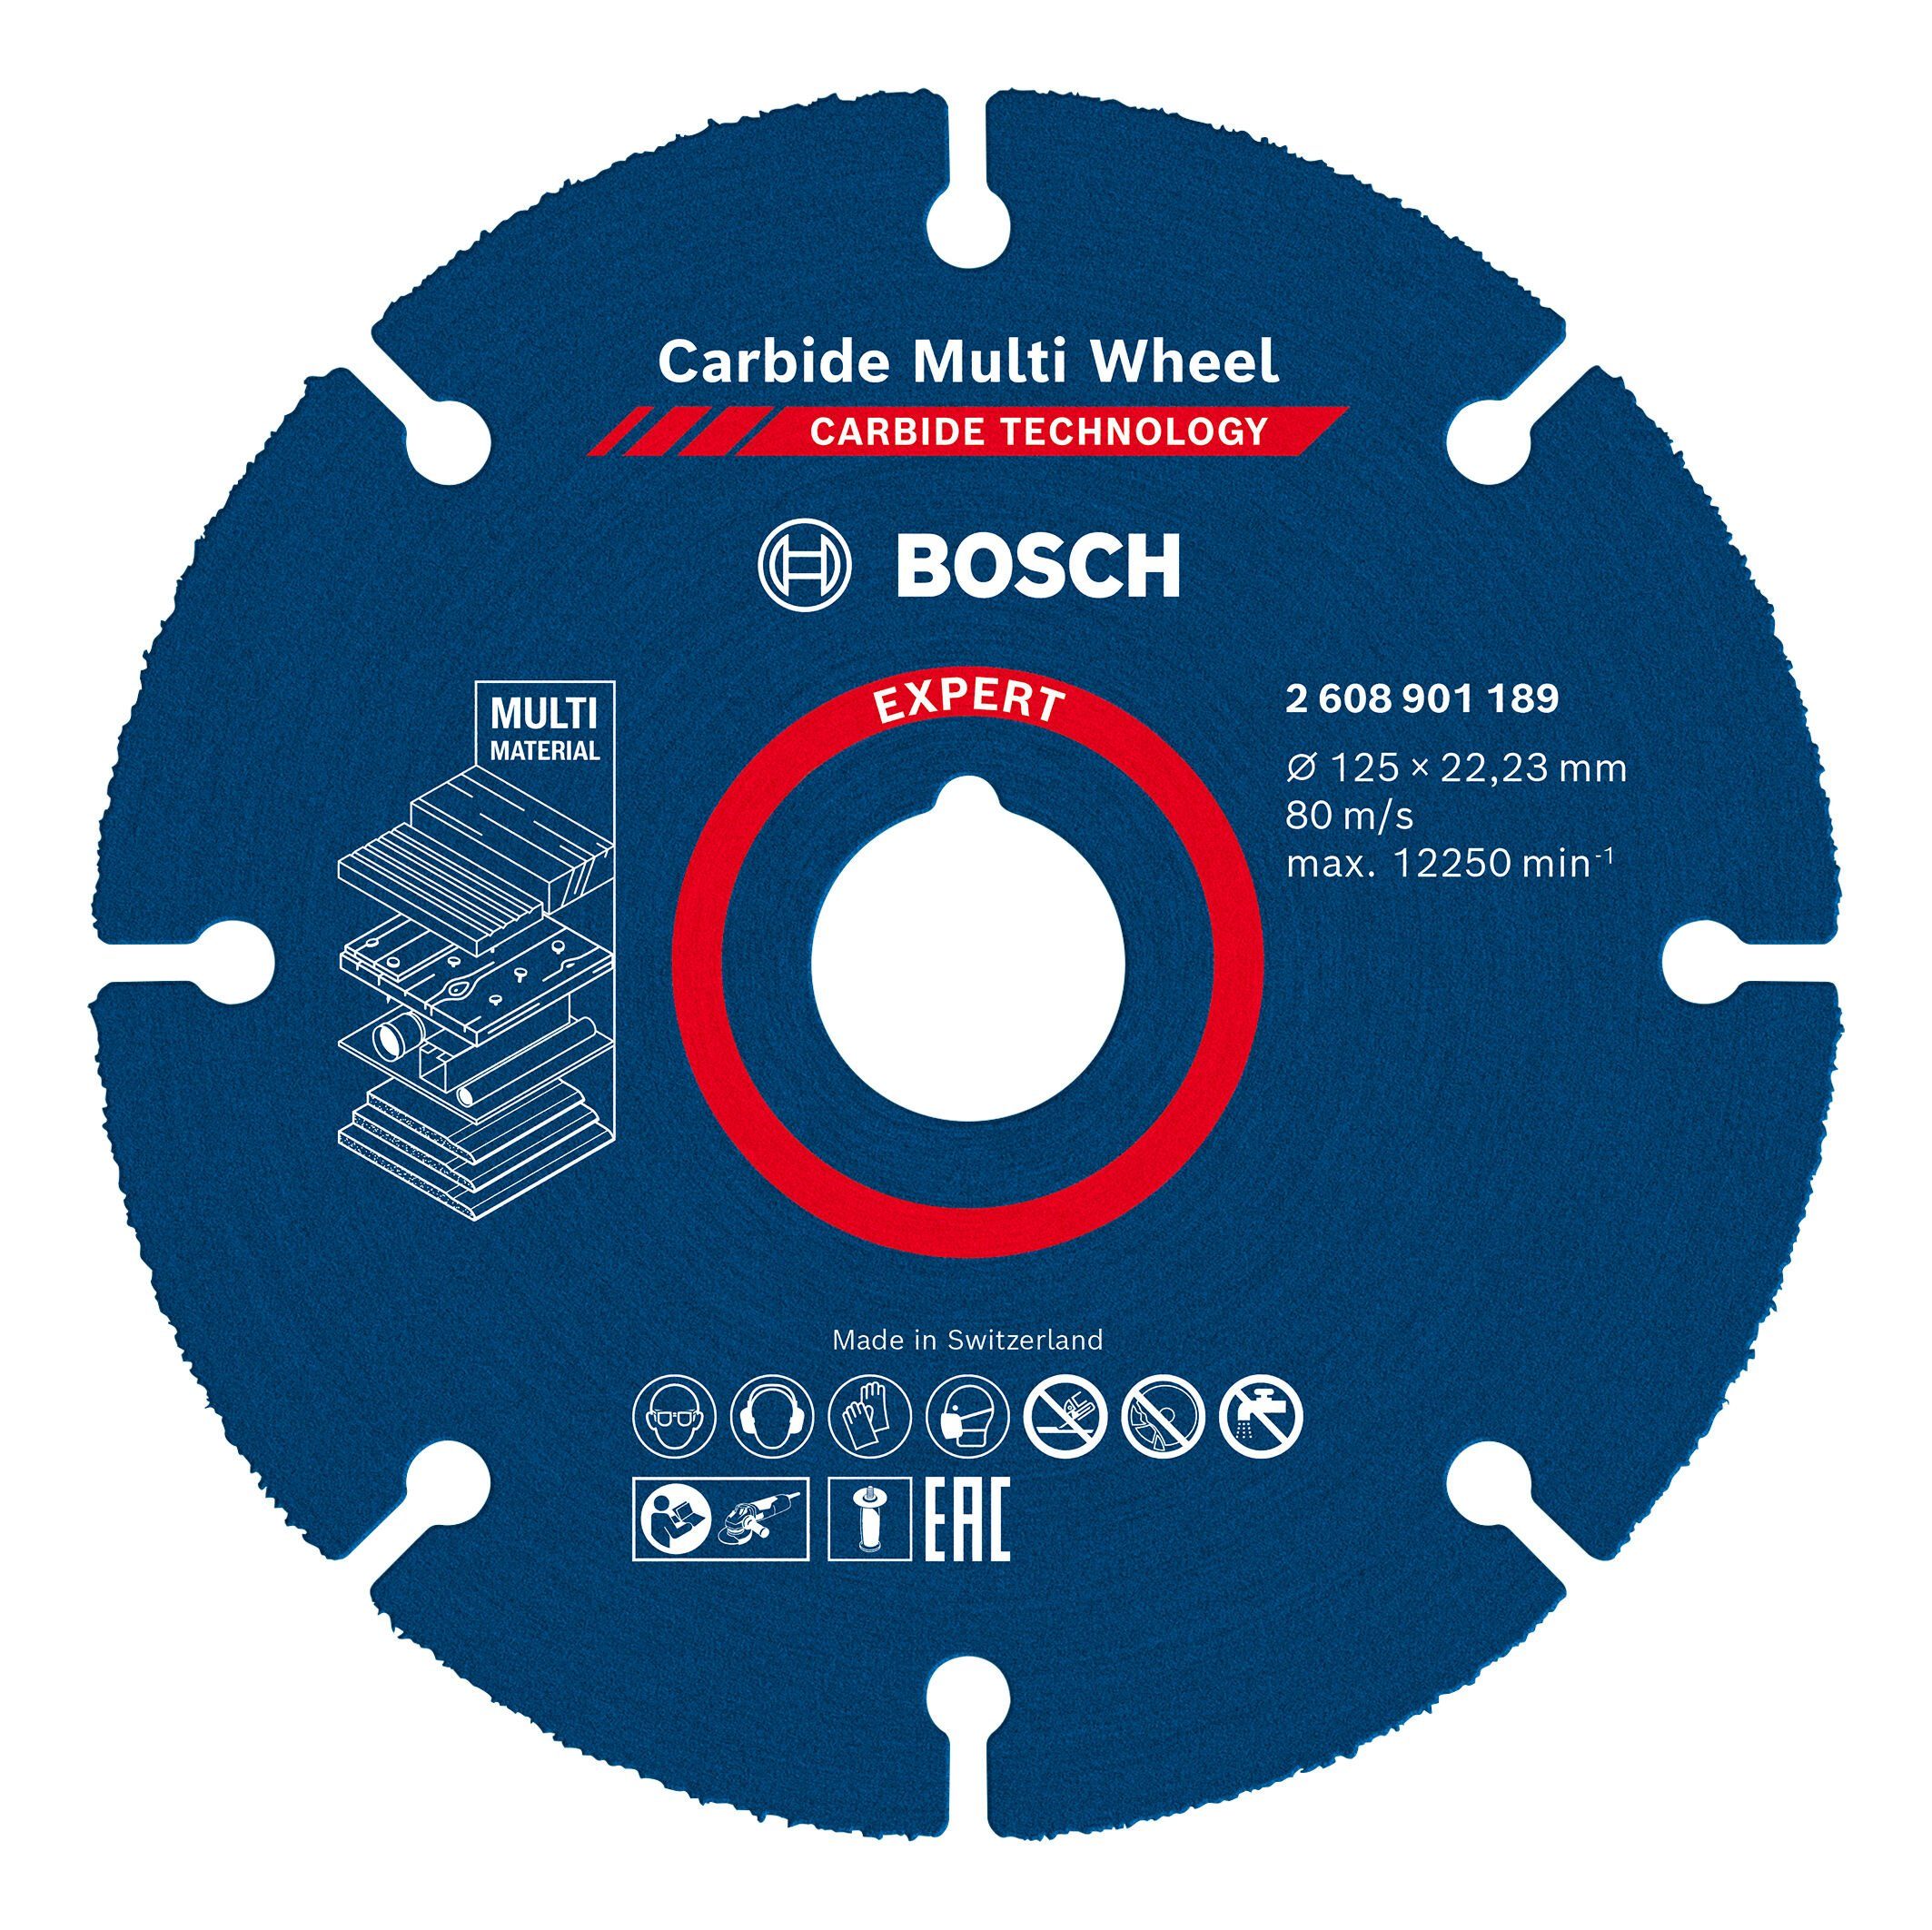 BOSCH Trennscheibe Expert Carbide Multi Wheel, Ø 125 mm, Trennscheibe, 22,23 mm